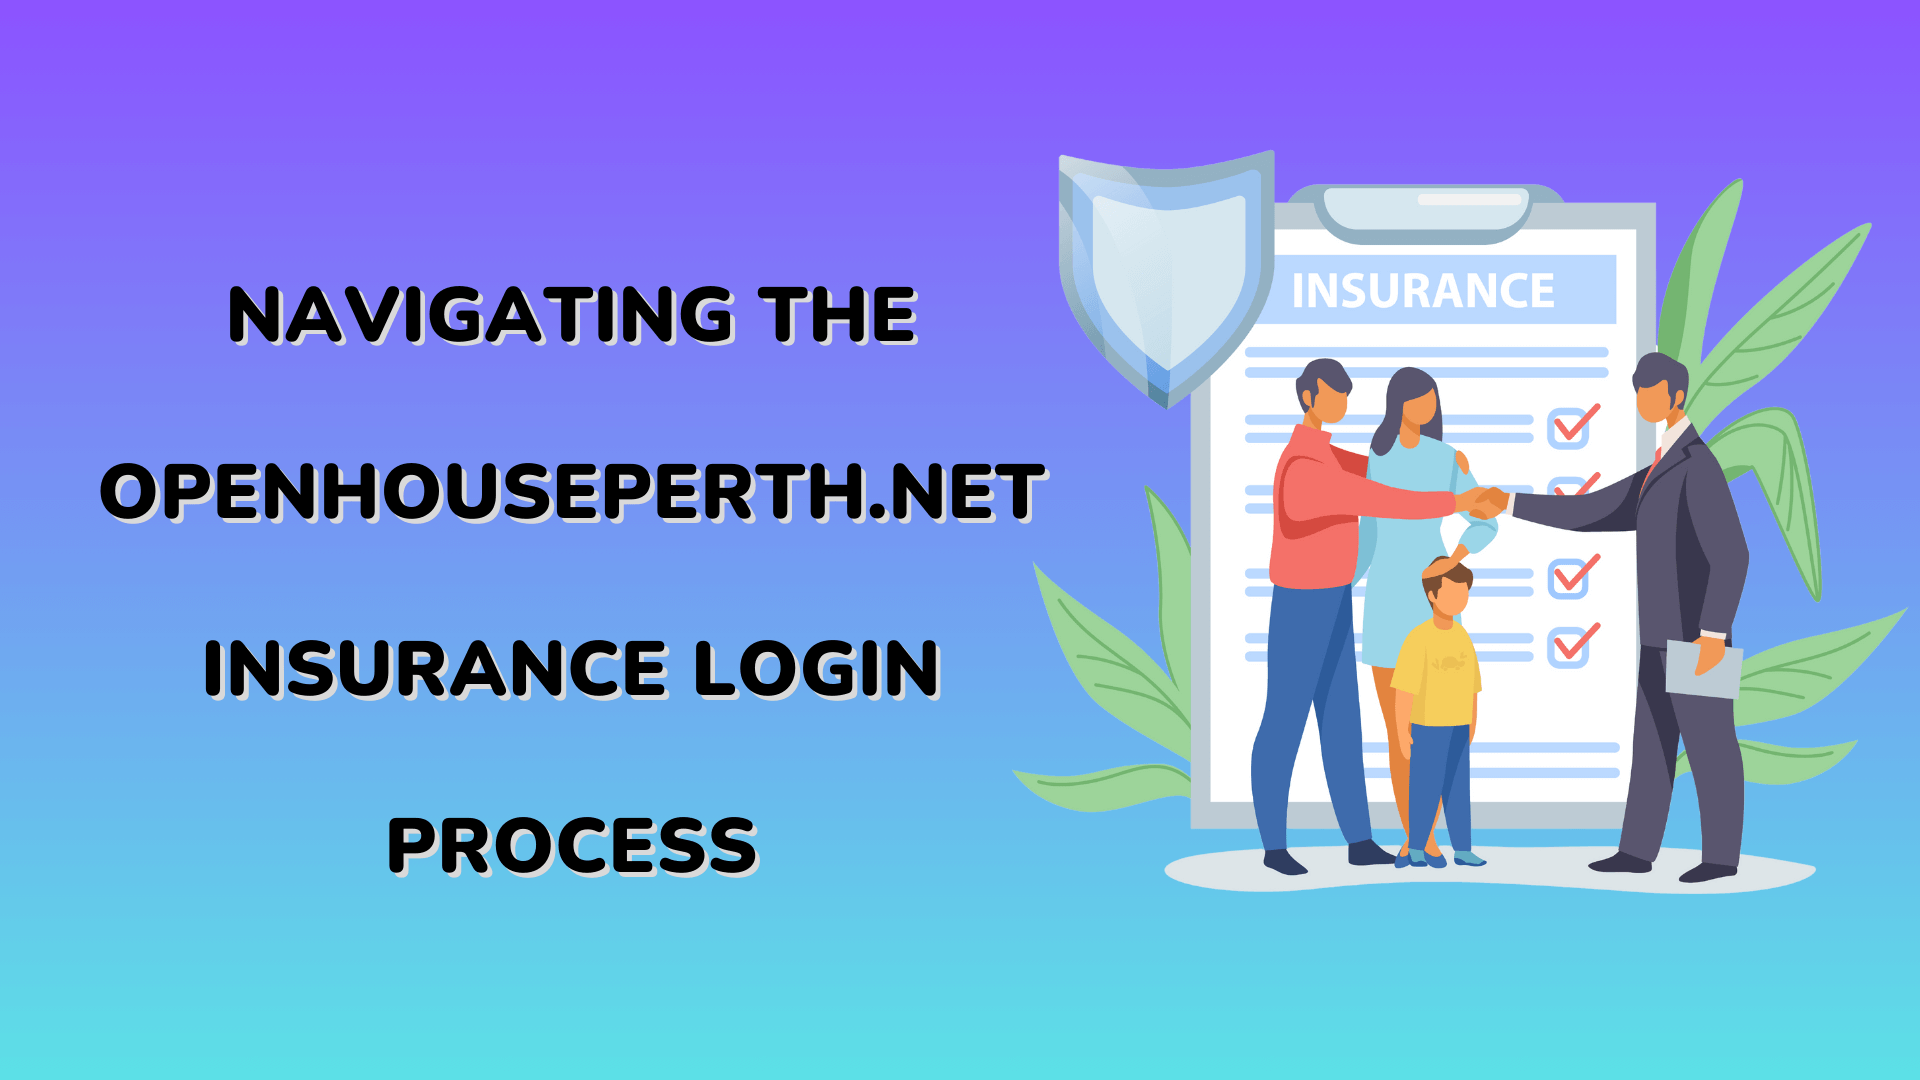 openhouseperth.net insurance process